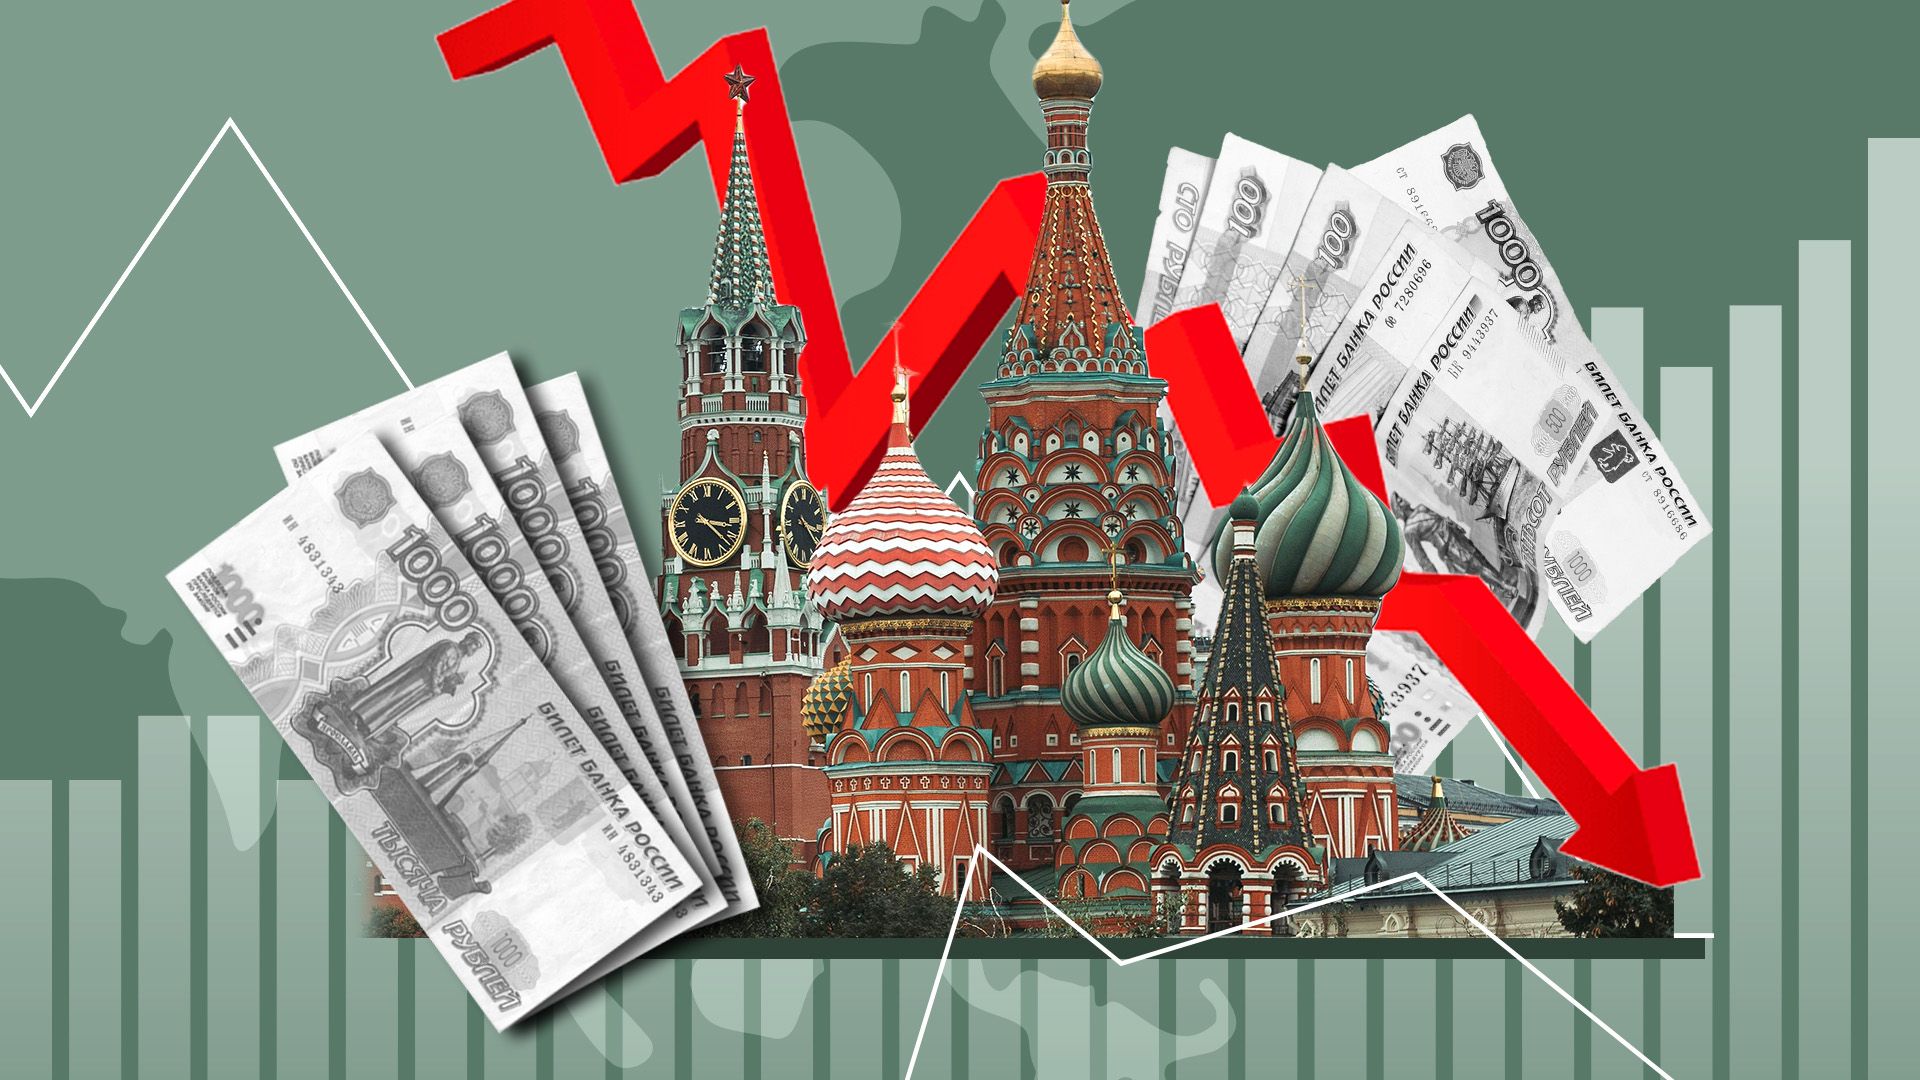 Мосбіржа не торгує доларами - проти Росії ввели носі санкції - чи впаде курс рубля